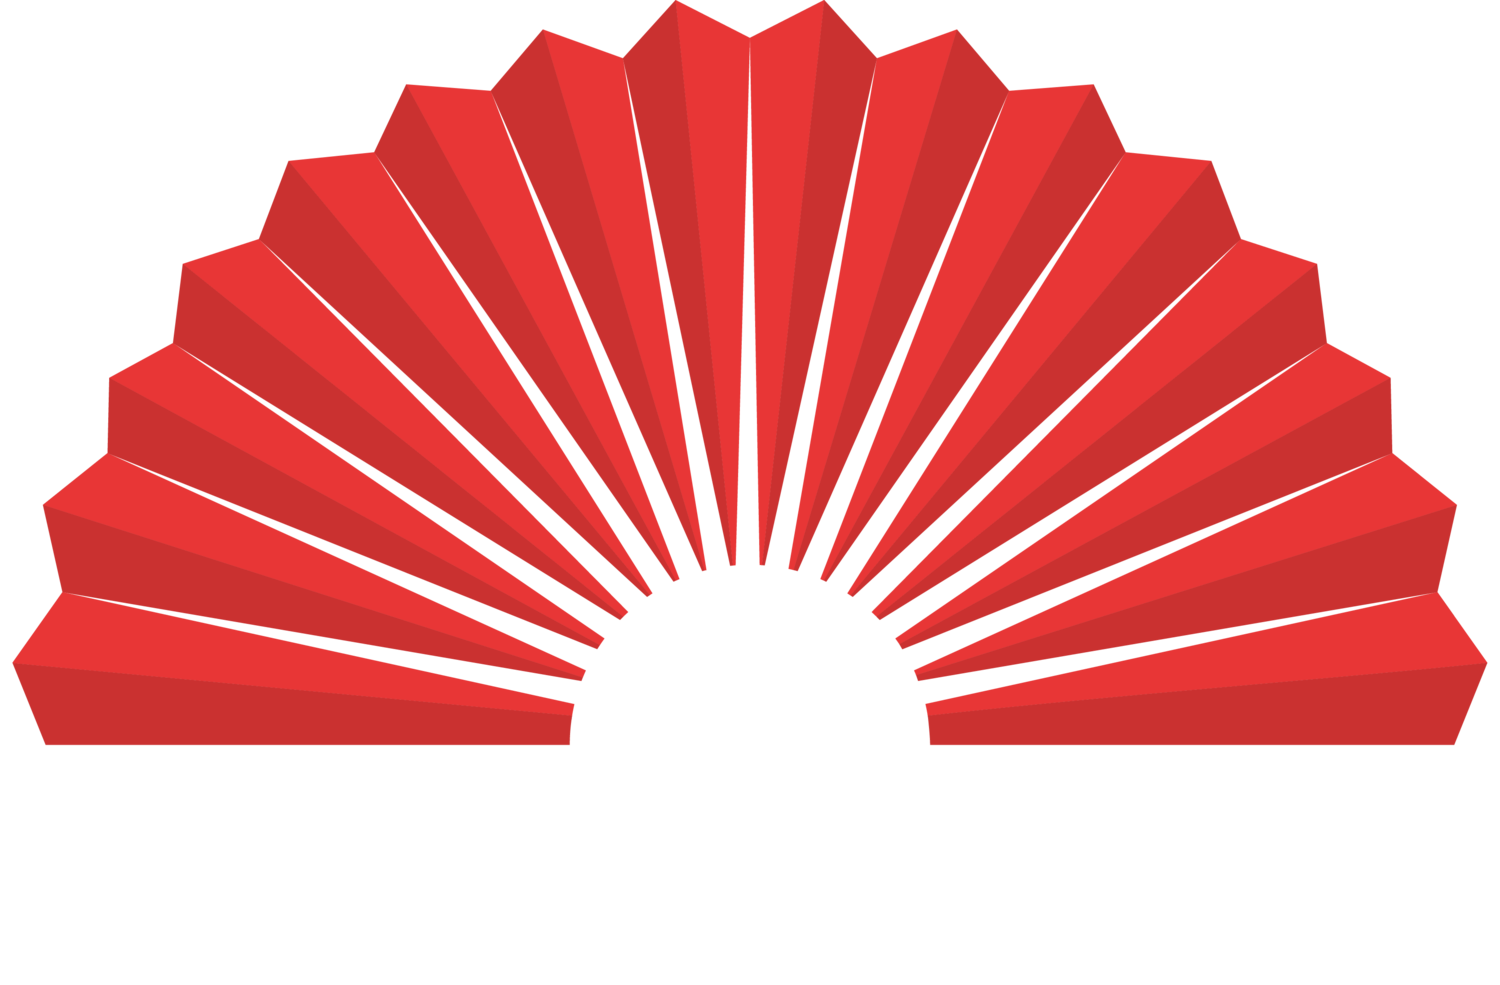 (c) Paradiso-tanzbar.de